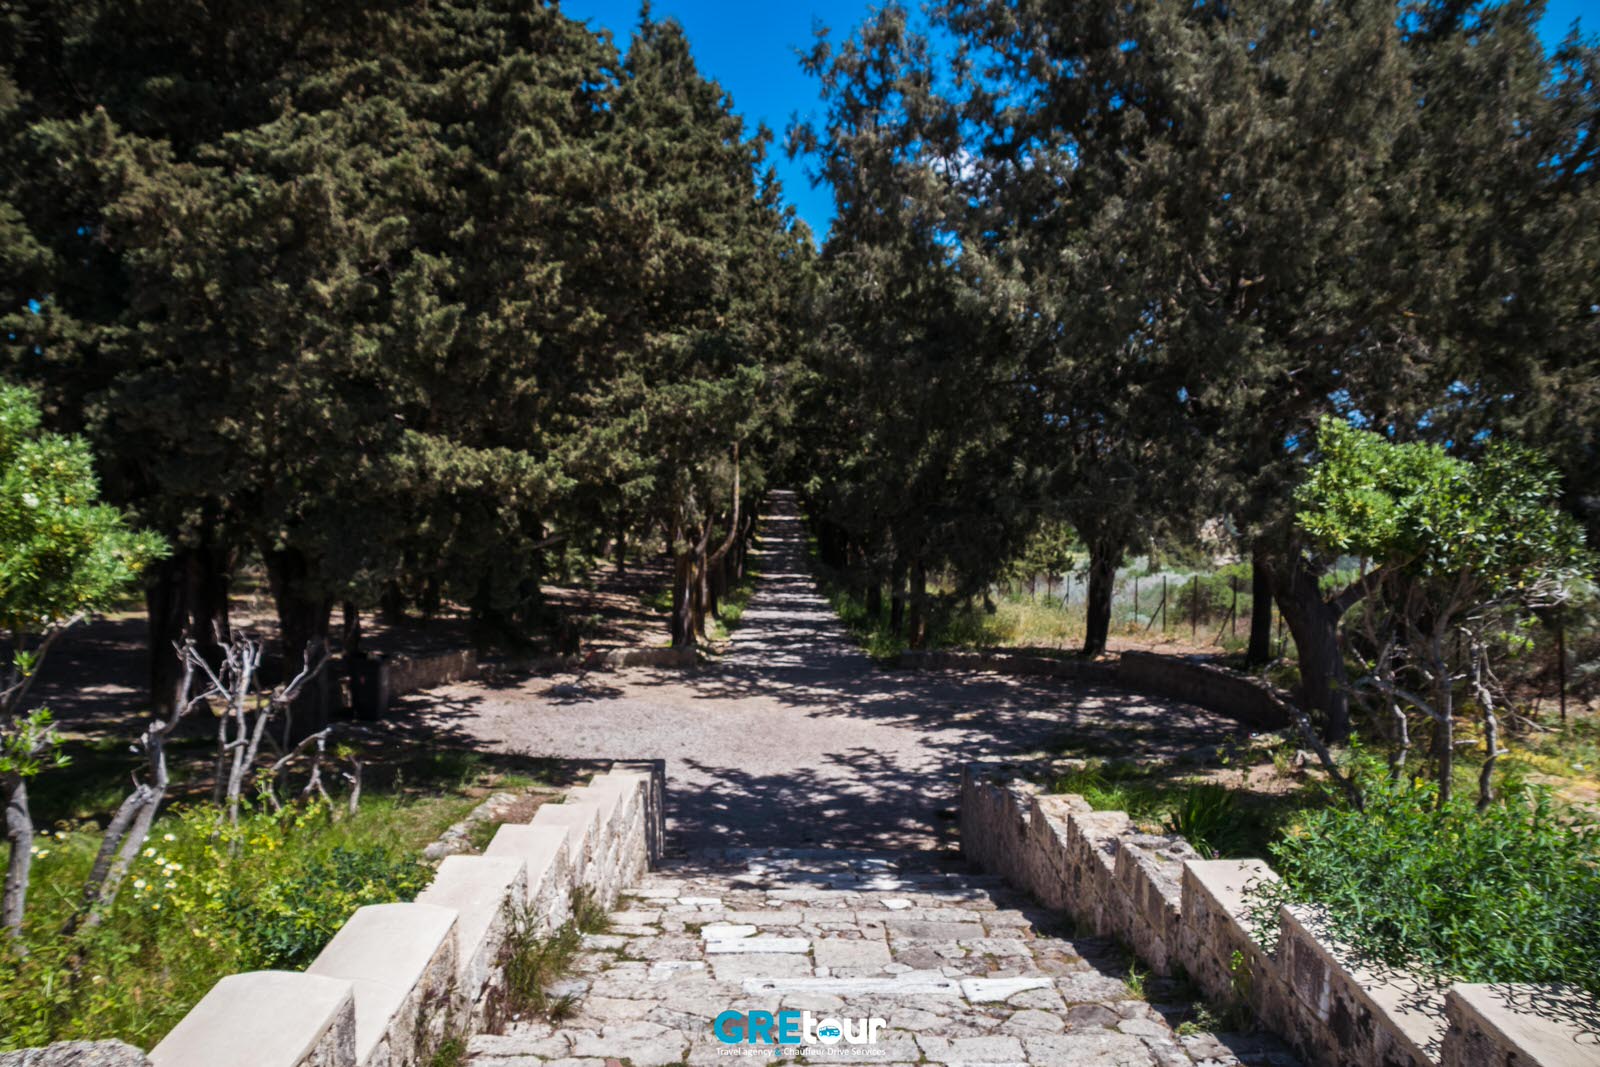 golgotha path at filerimos hill